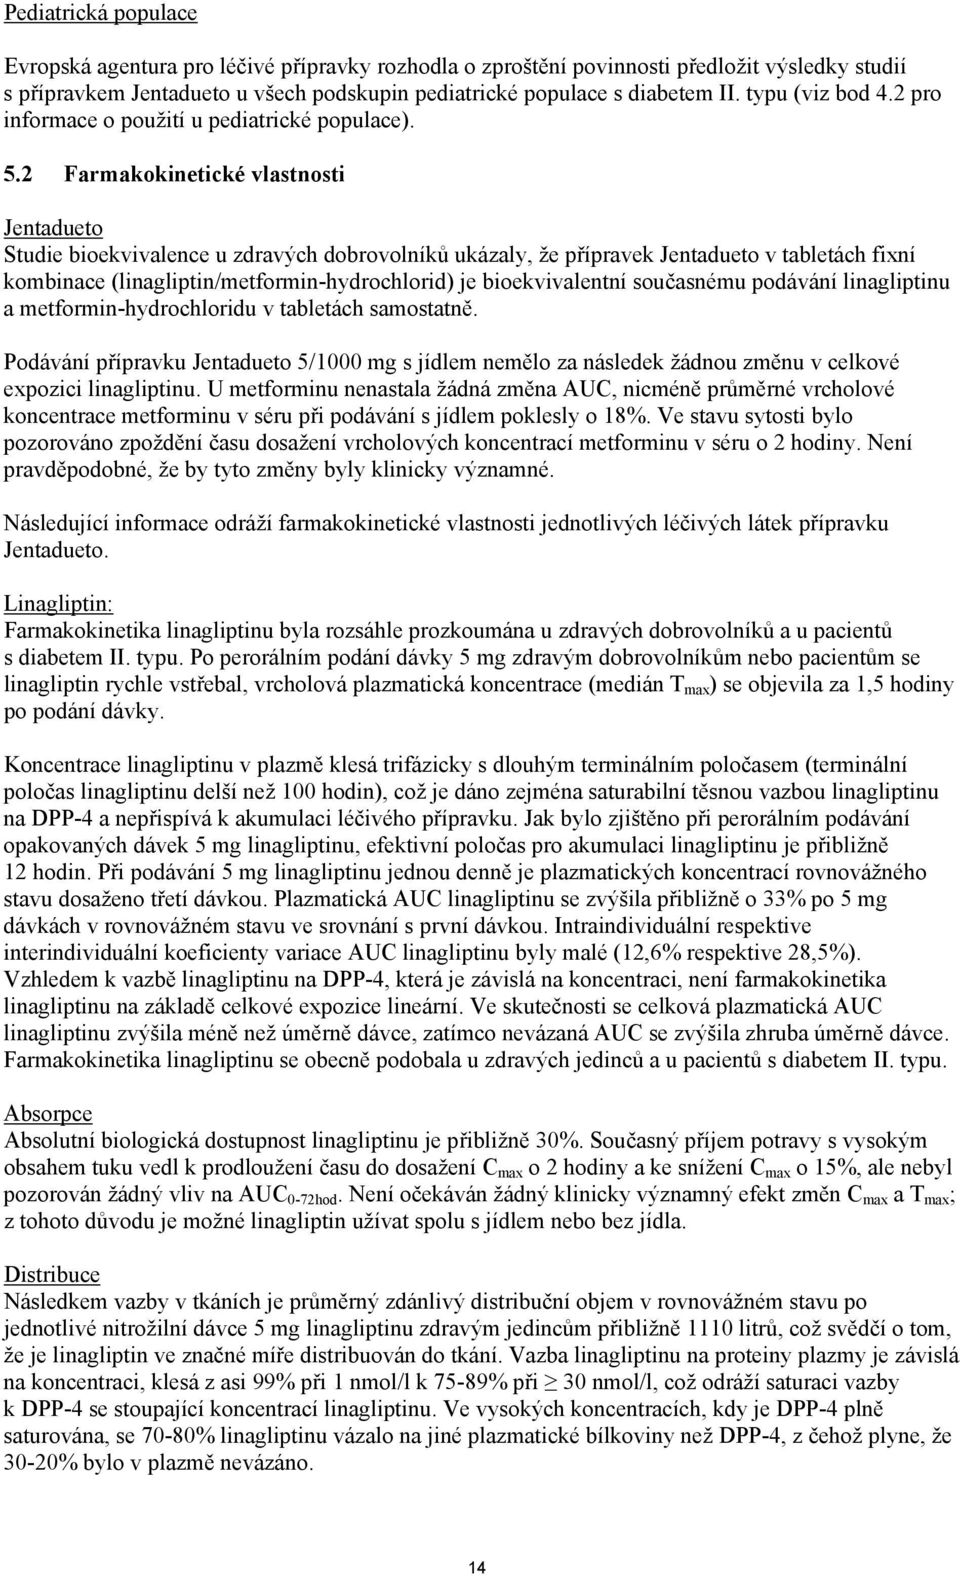 2 Farmakokinetické vlastnosti Jentadueto Studie bioekvivalence u zdravých dobrovolníků ukázaly, že přípravek Jentadueto v tabletách fixní kombinace (linagliptin/metformin-hydrochlorid) je